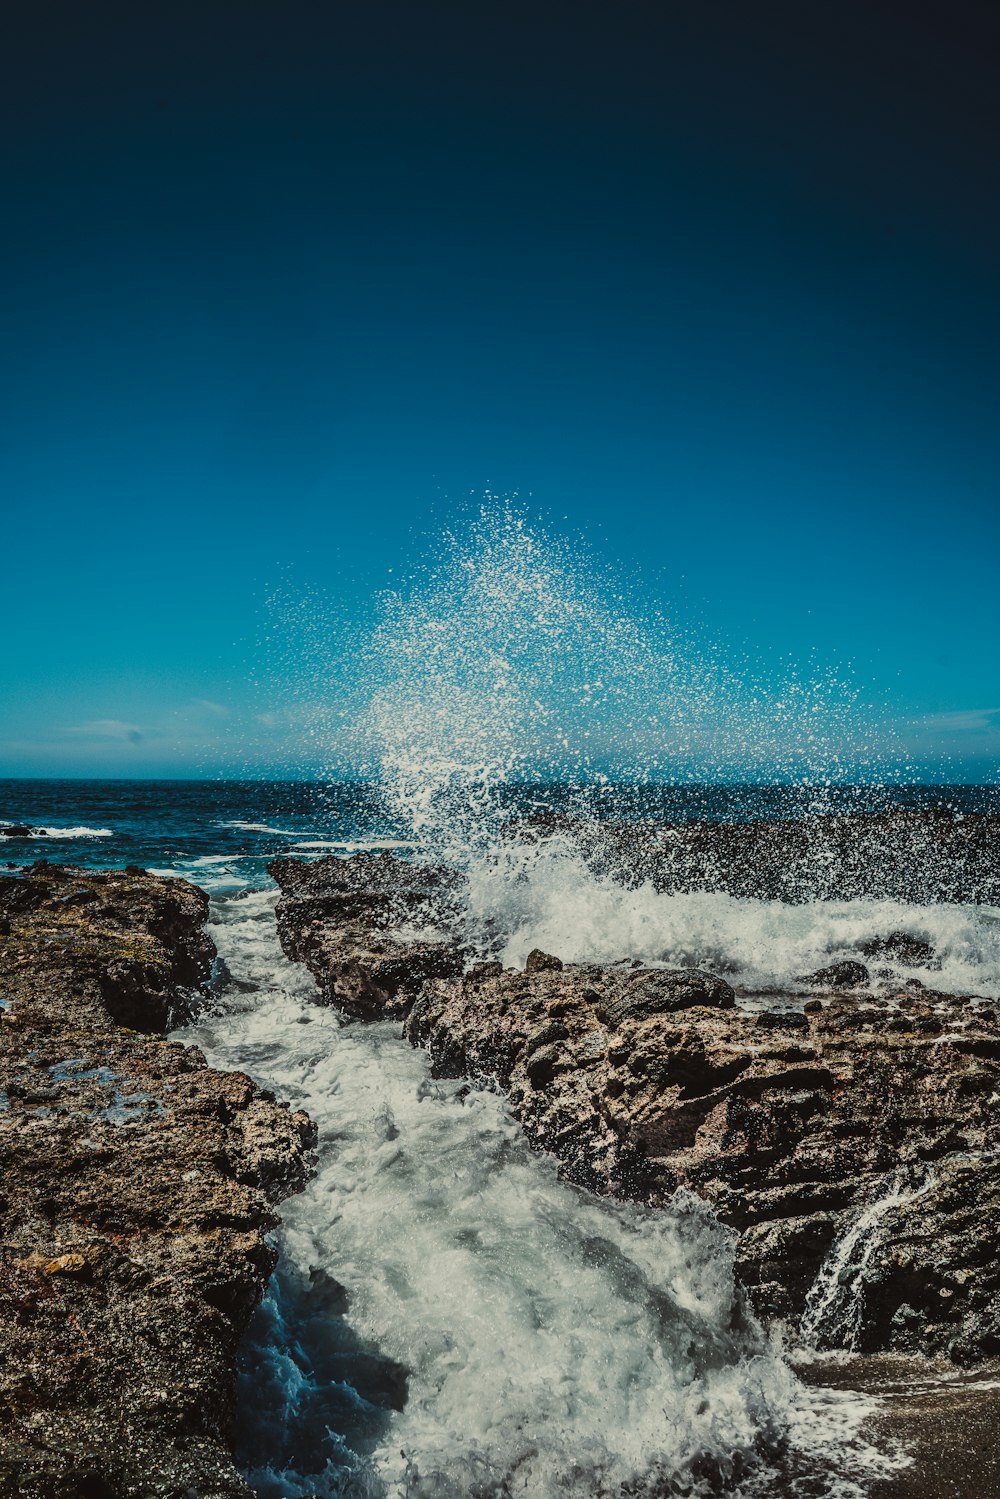 water splashing on rock under blue sky